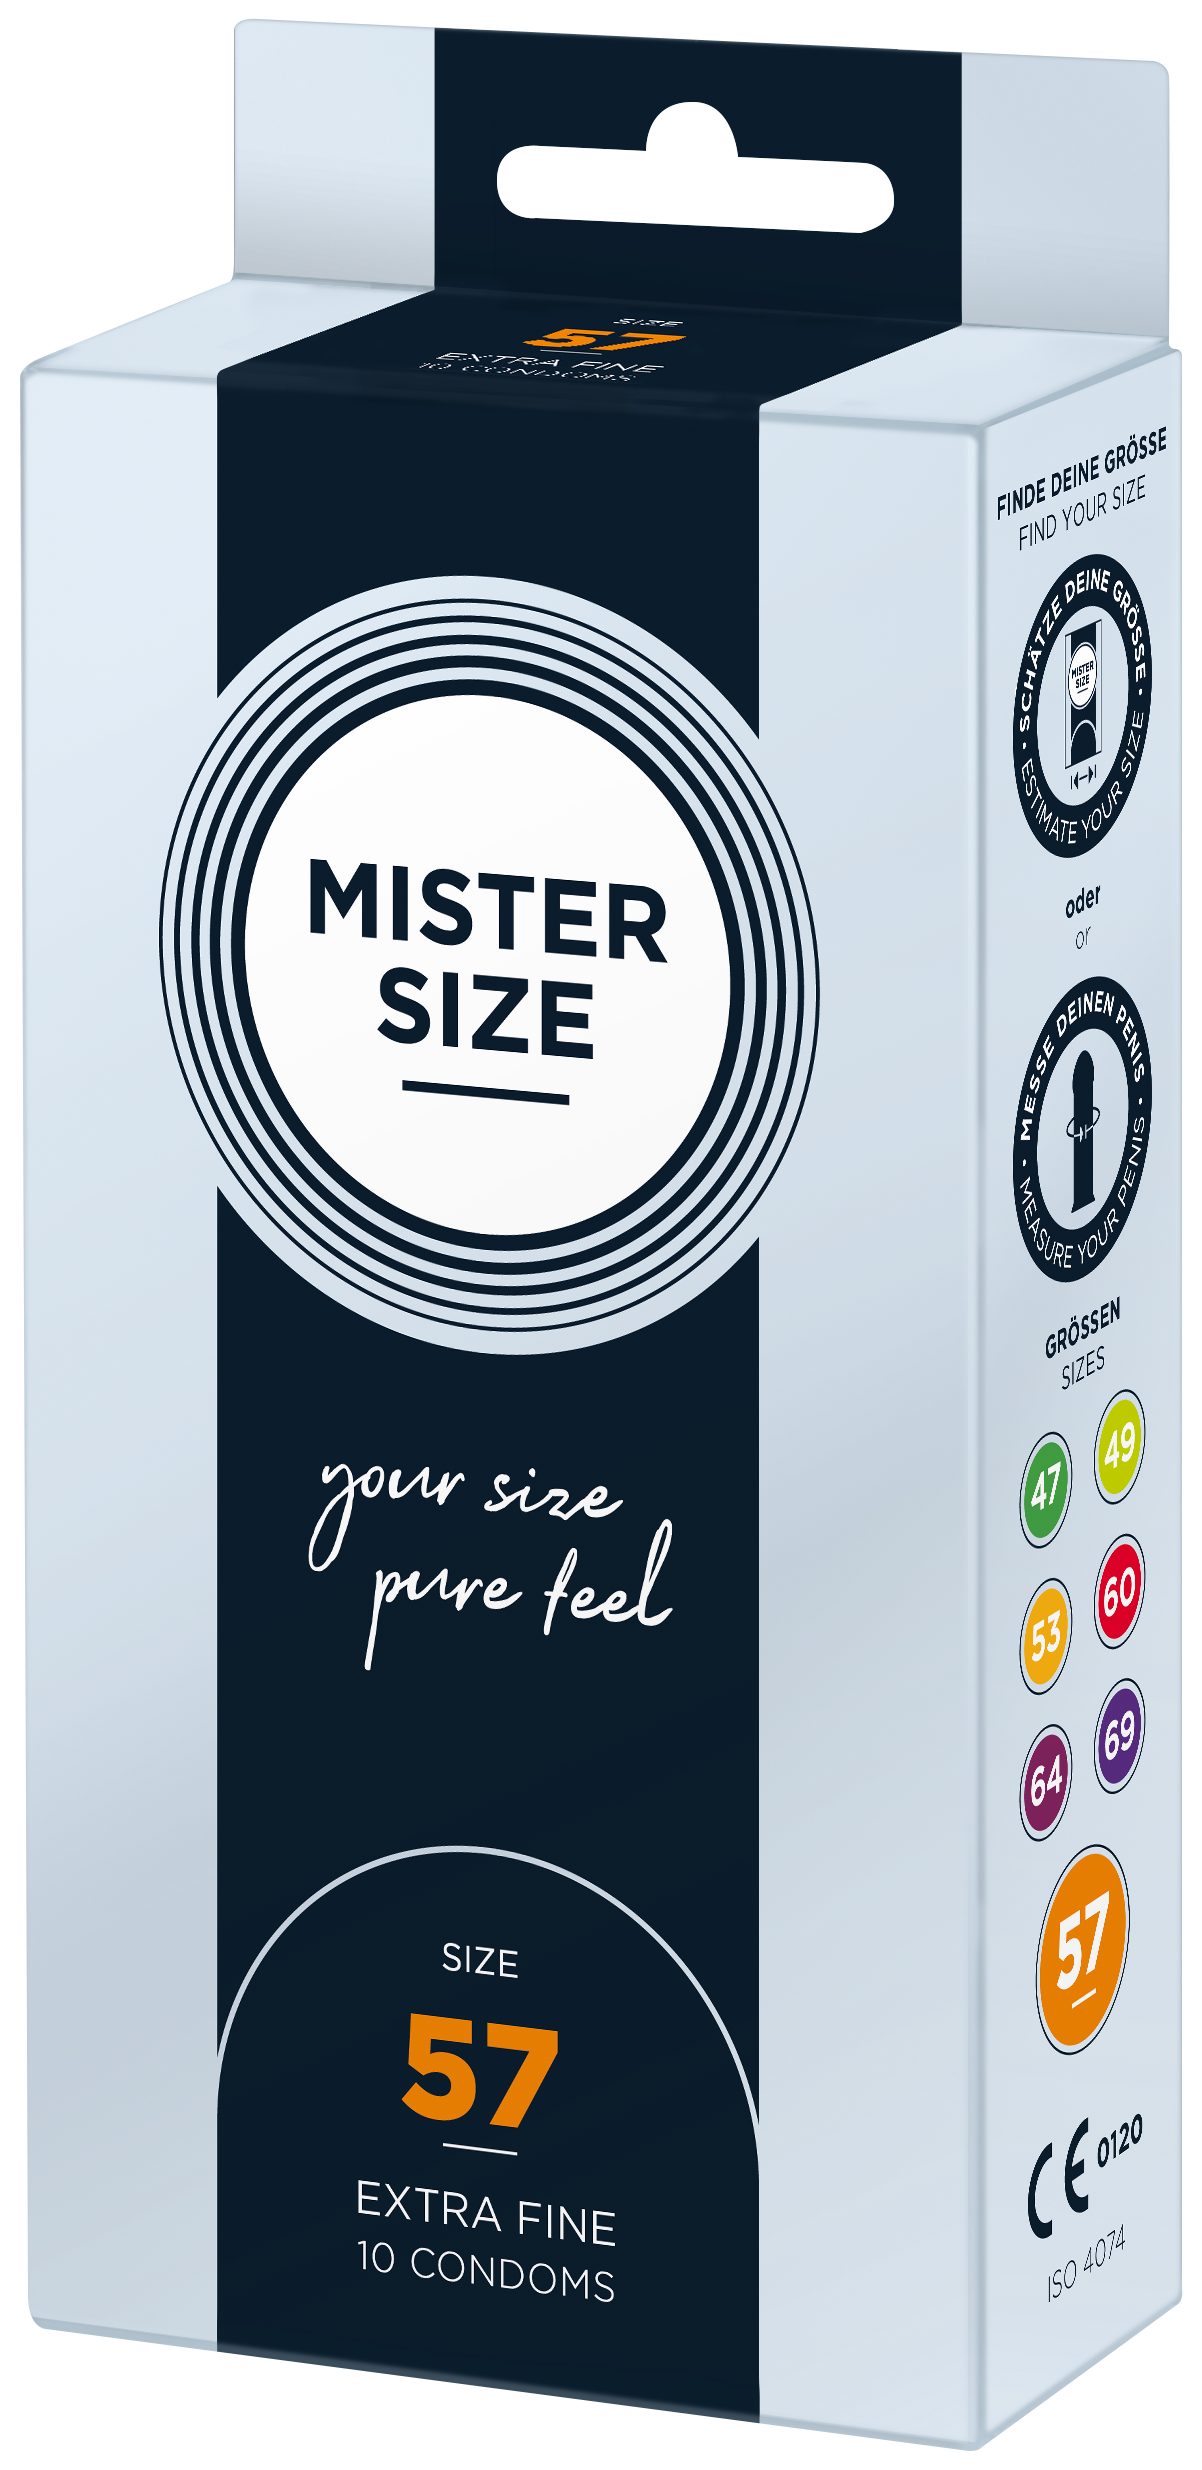 MISTER SIZE Kondome 10 Stück, Nominale Breite feucht & gefühlsecht 57mm